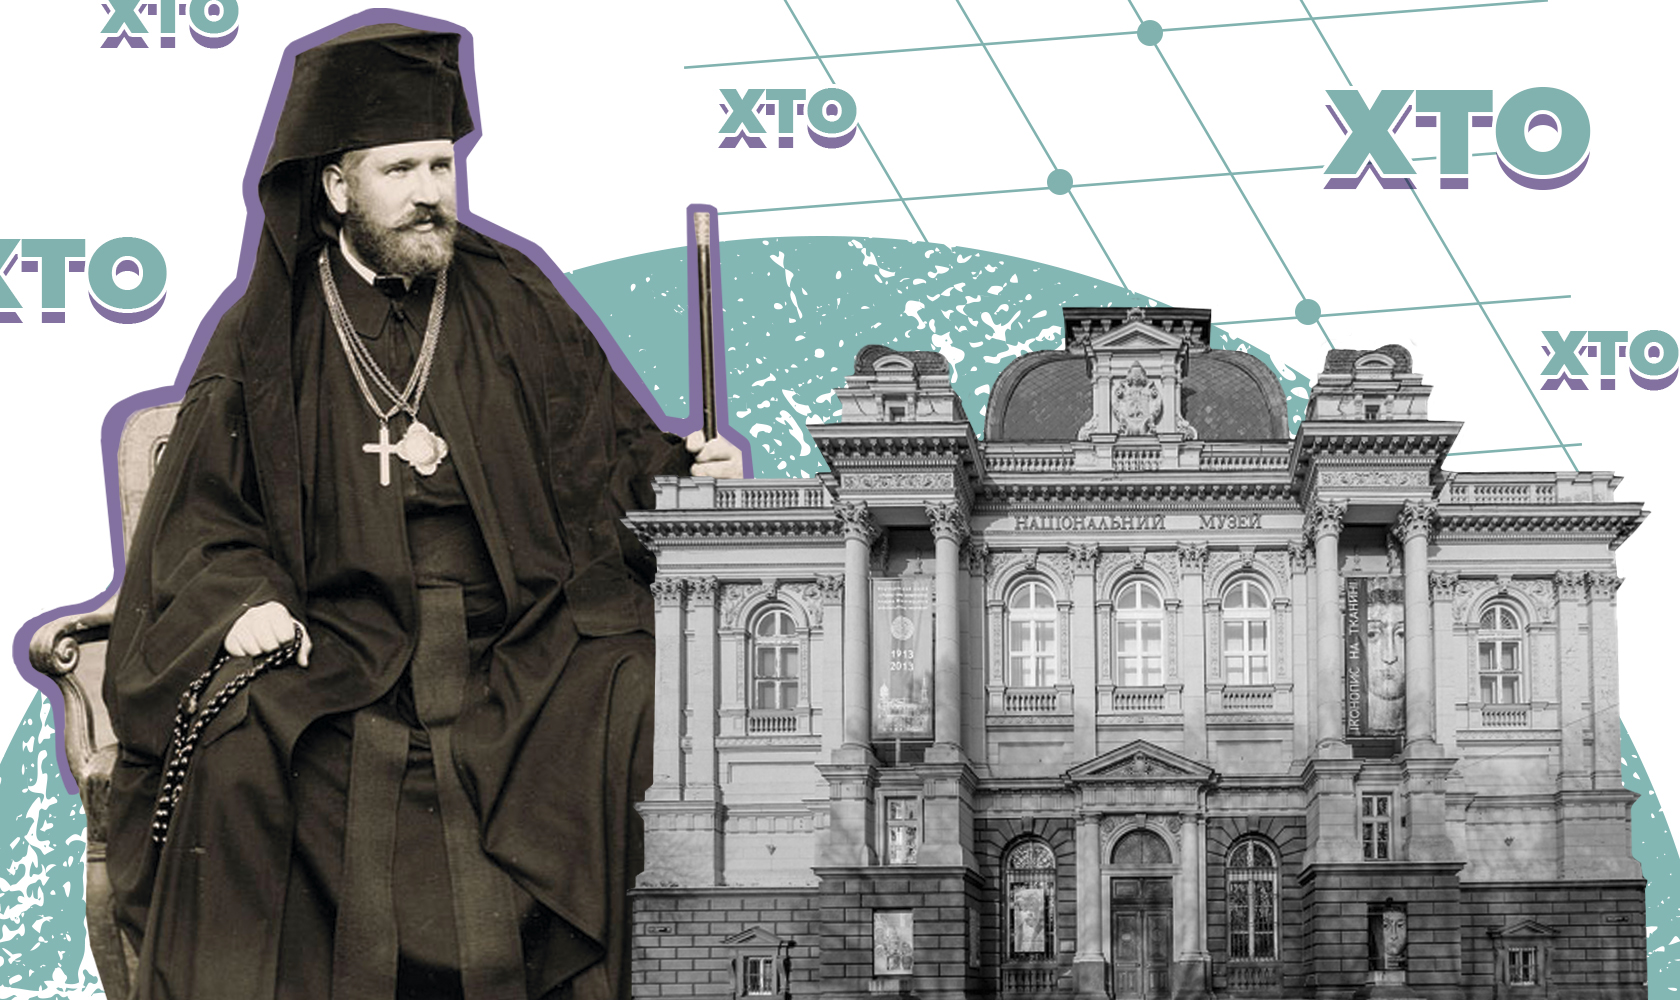 Cправжнє ім’я та справжні культурні подвиги митрополита Шептицького